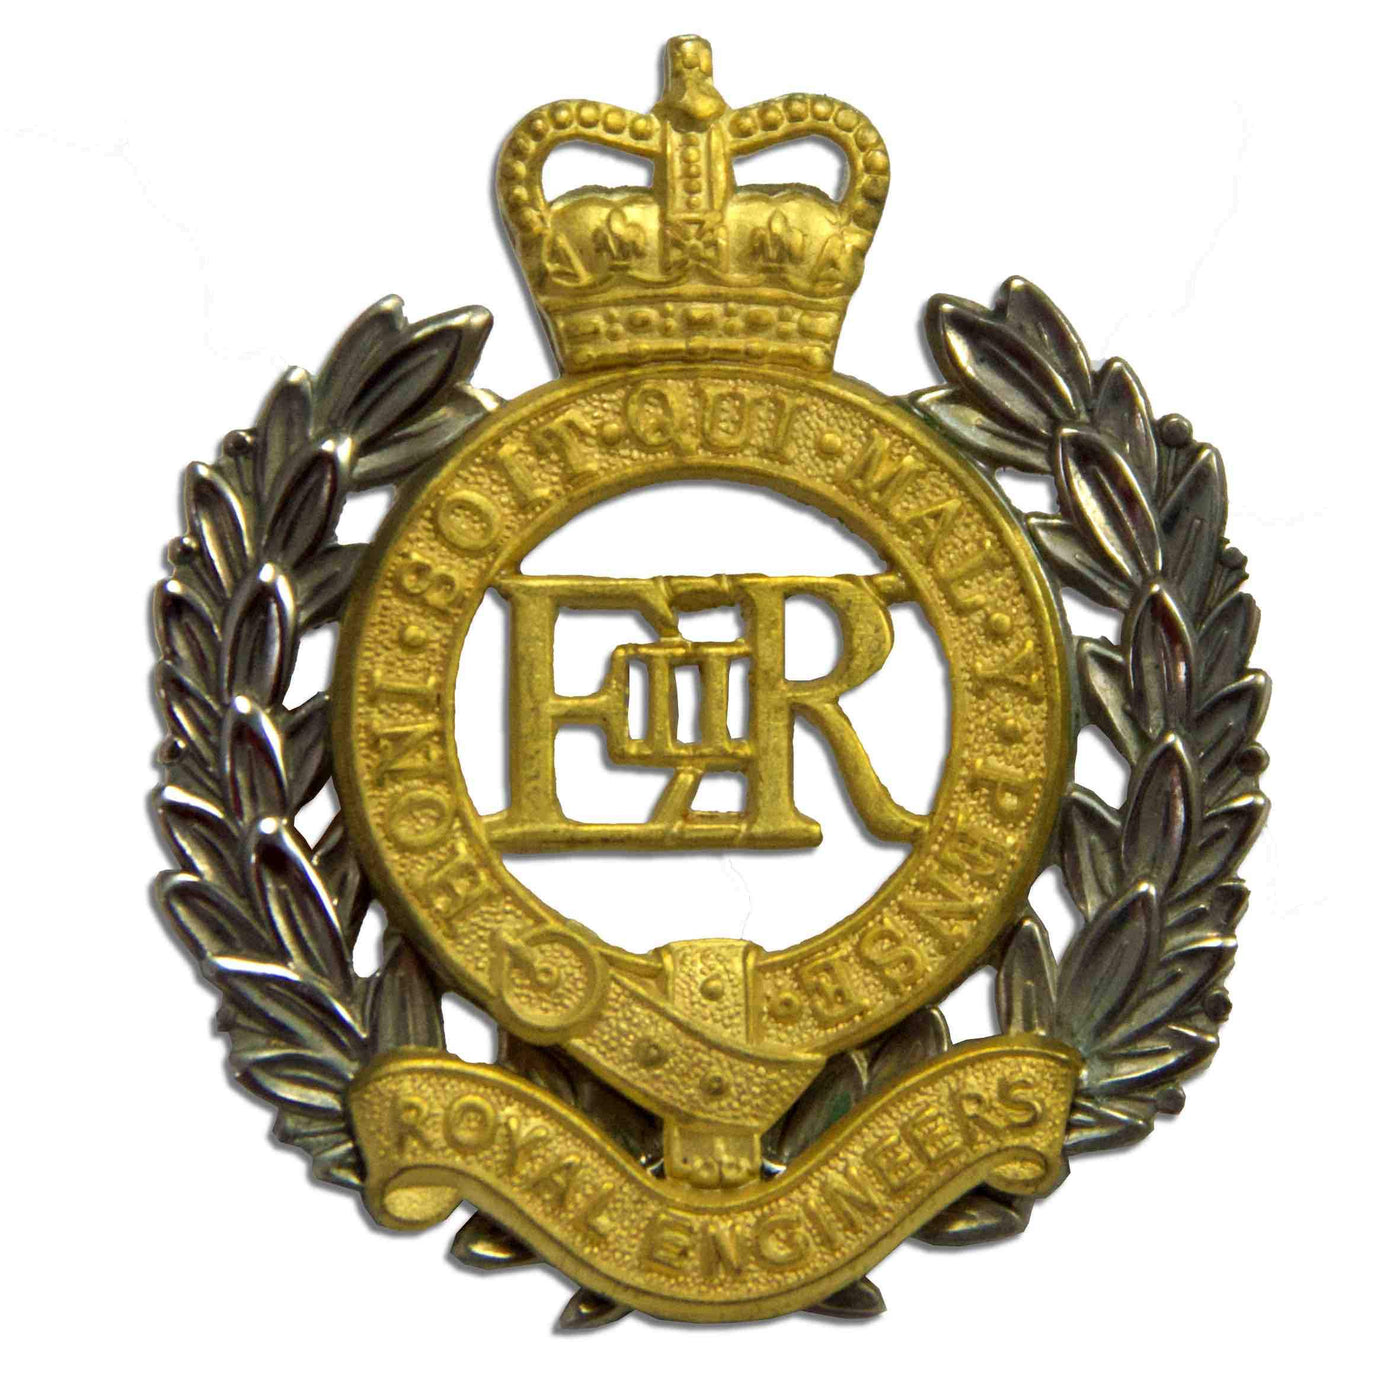 Regimental Beret Badges, Marines Beret Badge, Royal Green Jacket Beret Badge, Grenadier Beret Badge, Black Watch Beret Badge, Regiment Beret Badge